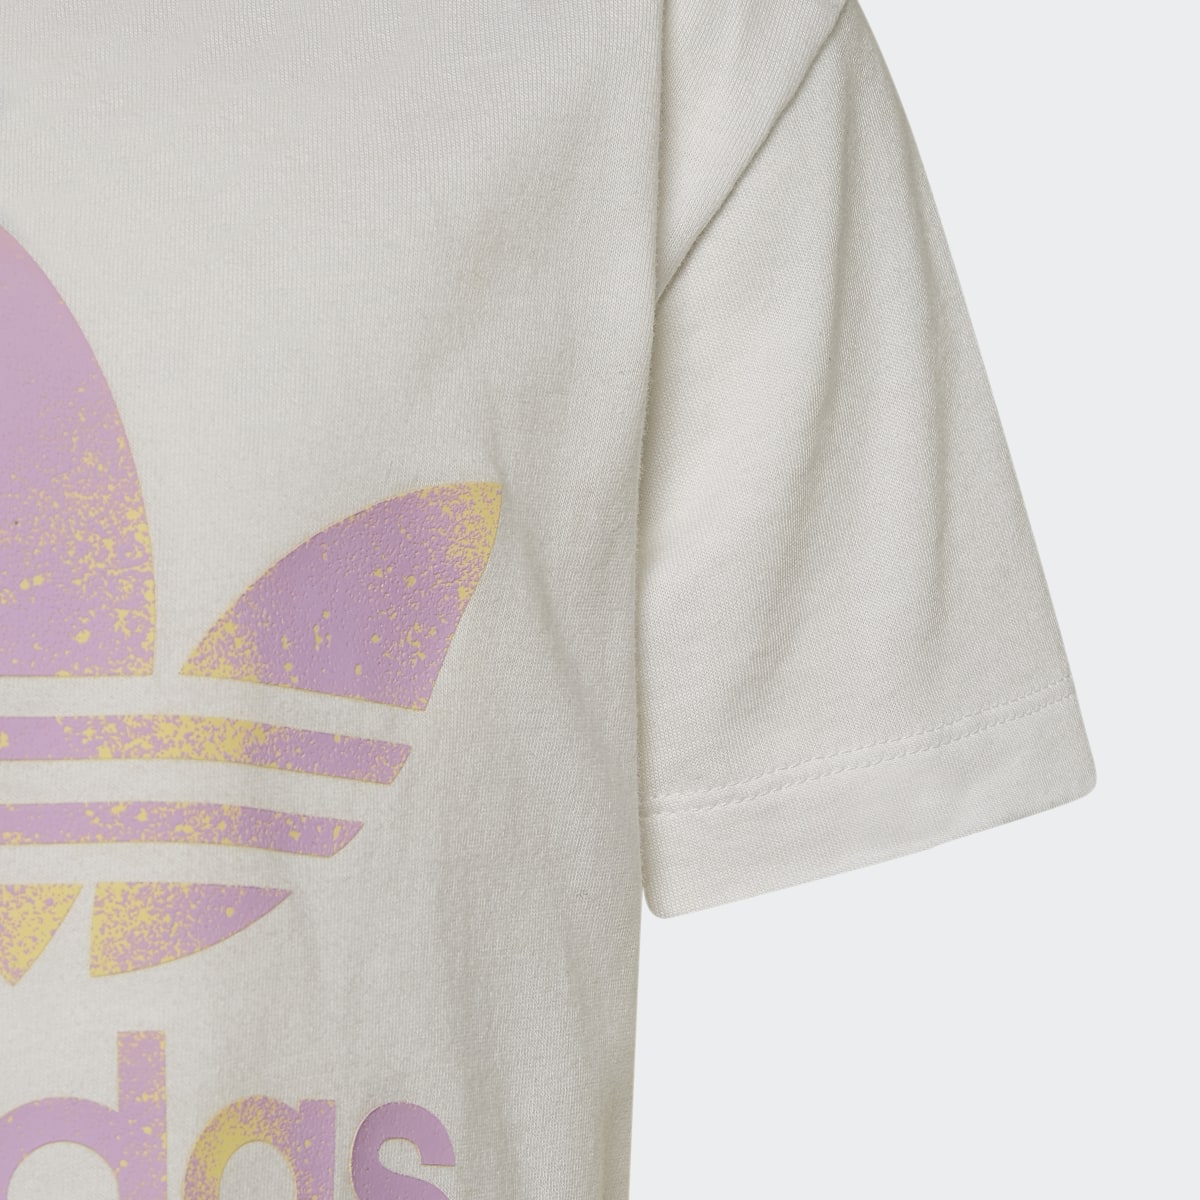 Adidas Graphic Logo Shorts and T-Shirt Set. 7